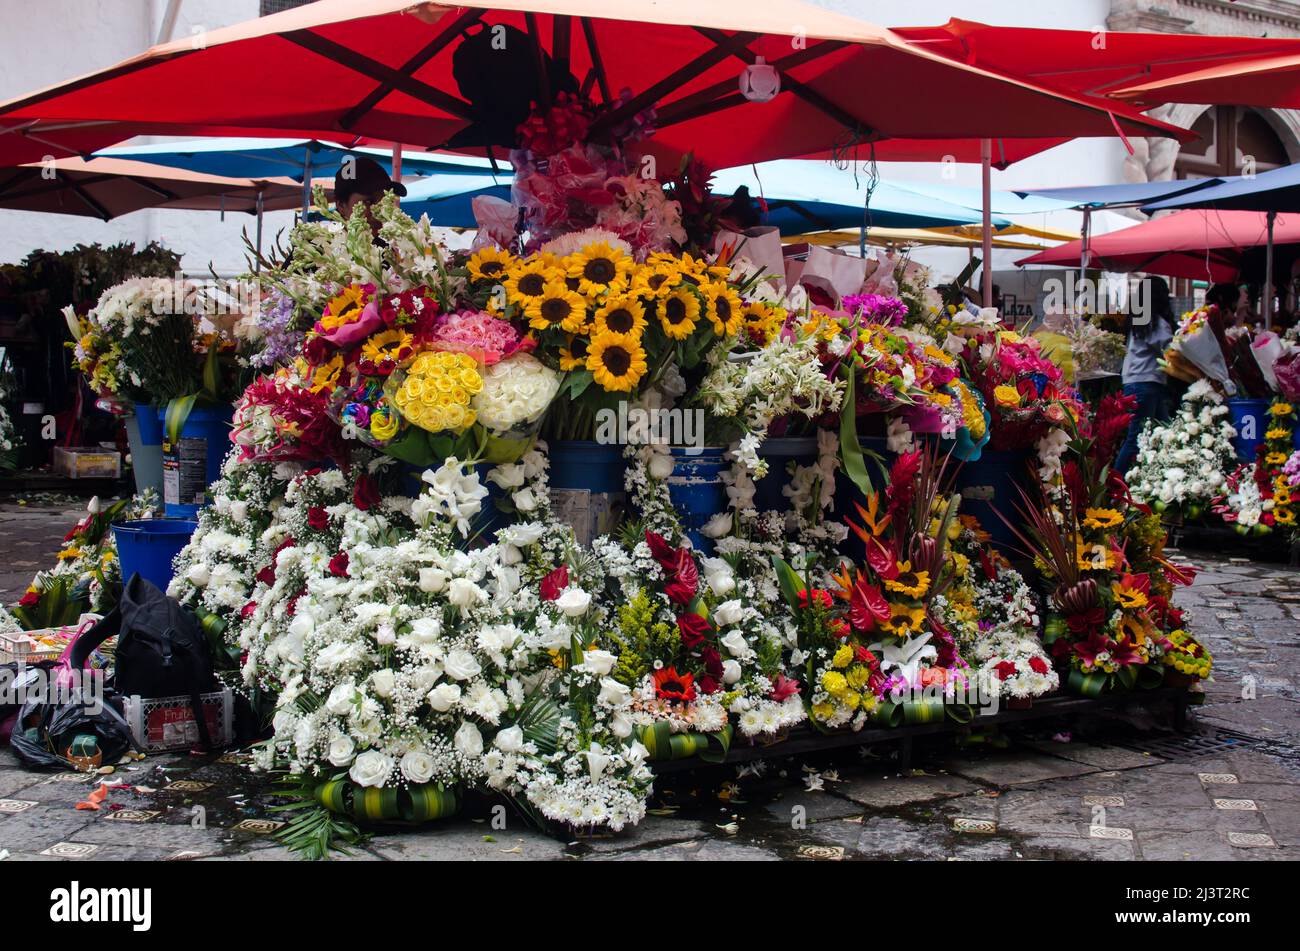 Le marché aux fleurs de Cuenca, un marché dynamique et coloré situé dans la ville de Cuenca, Équateur. Banque D'Images